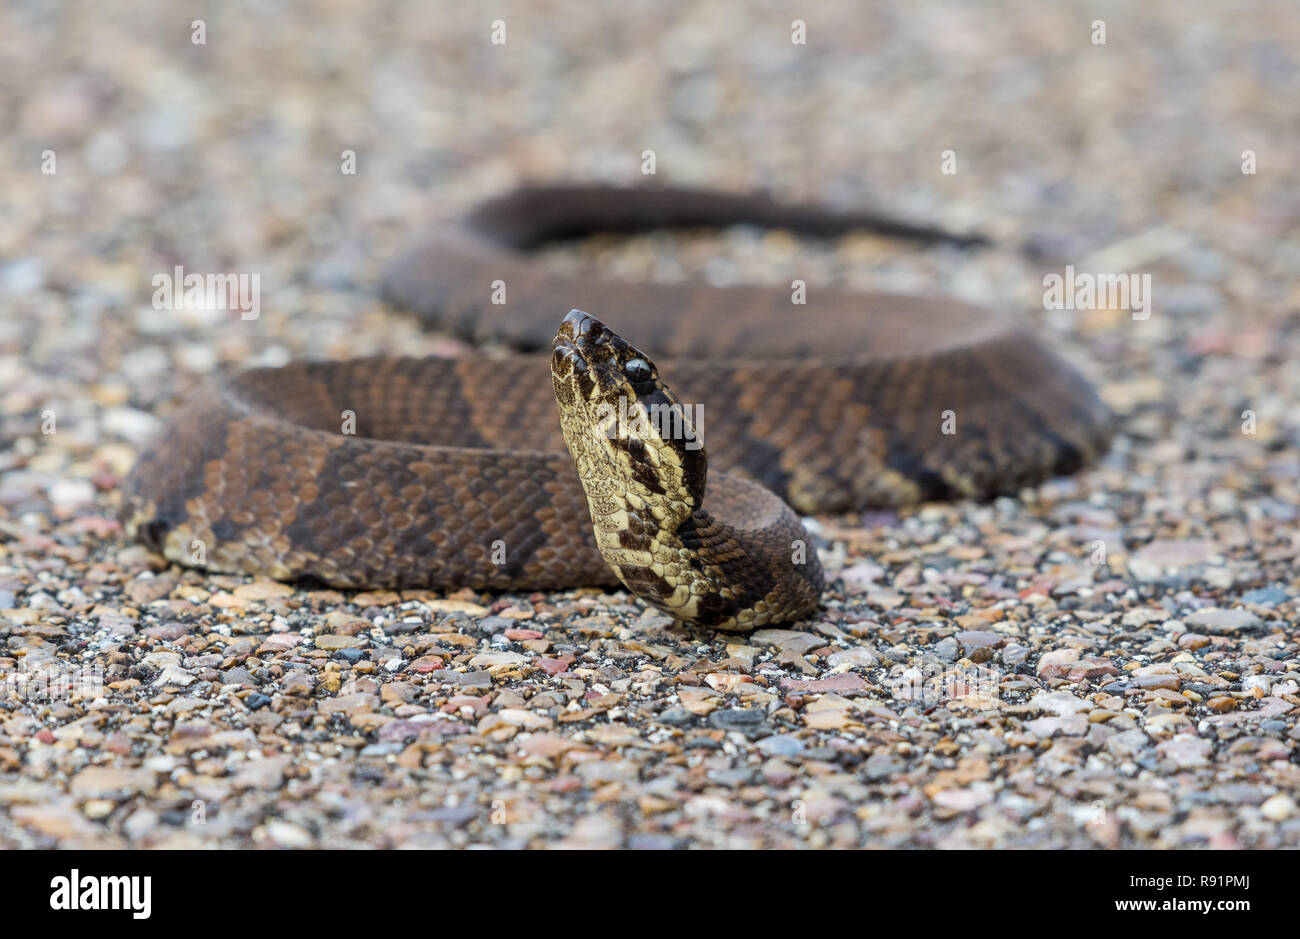 La serpiente (Agkistrodon Cottonmouth especies piscívoras), una especie de pit viper venenosas encontrados en el sureste de Estados Unidos. Aransas National Wildlife Refuge, Texas, EE.UU. Foto de stock